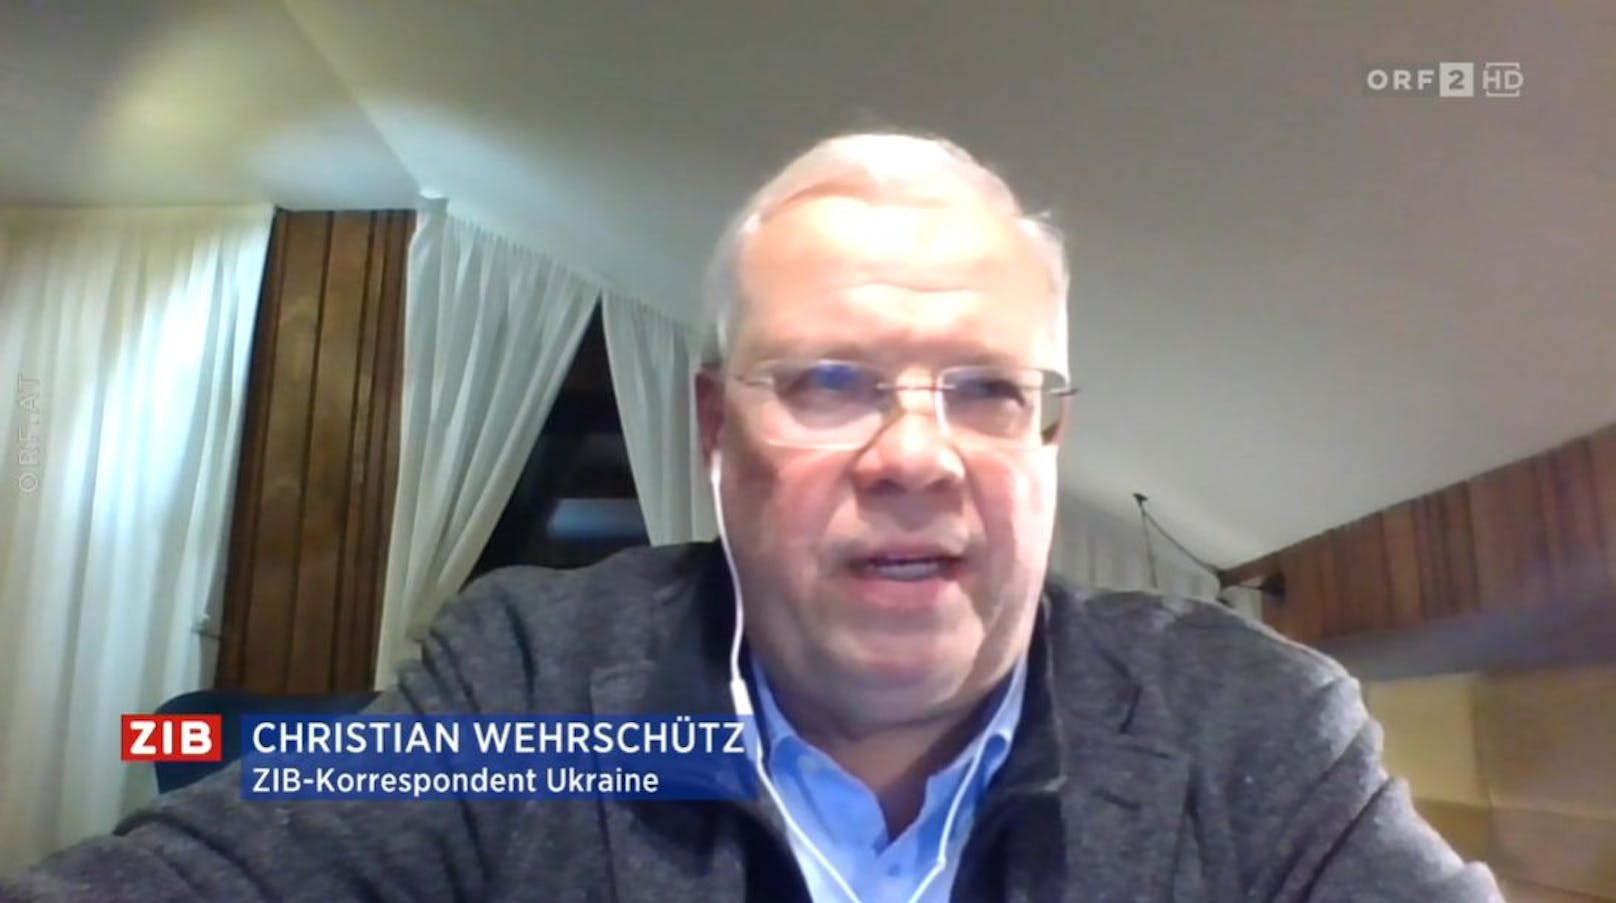 ORF-Korrespondent Christian Wehrschütz mit einer Lage-Einschätzung in der ZIB2 bei Armin Wolf am 2. März 2022.